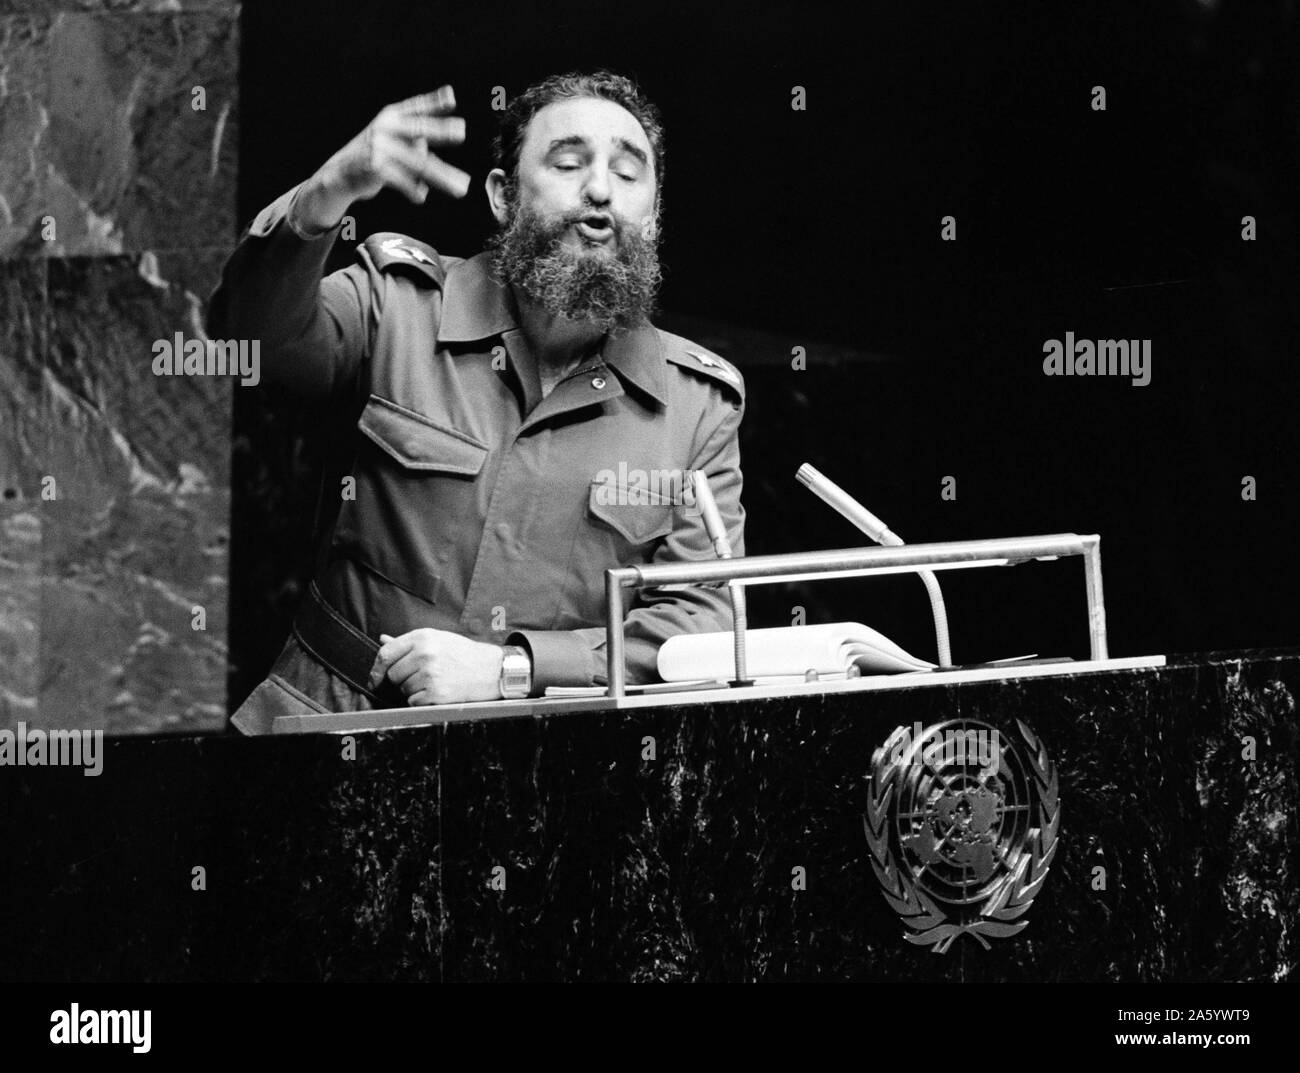 Photo de Fidel Castro (1926-) homme politique et révolutionnaire cubain qui a servi comme Premier Ministre de la République de Cuba de 1959 à 1976 puis président de 1976 à 2008. Daté 1960 Banque D'Images